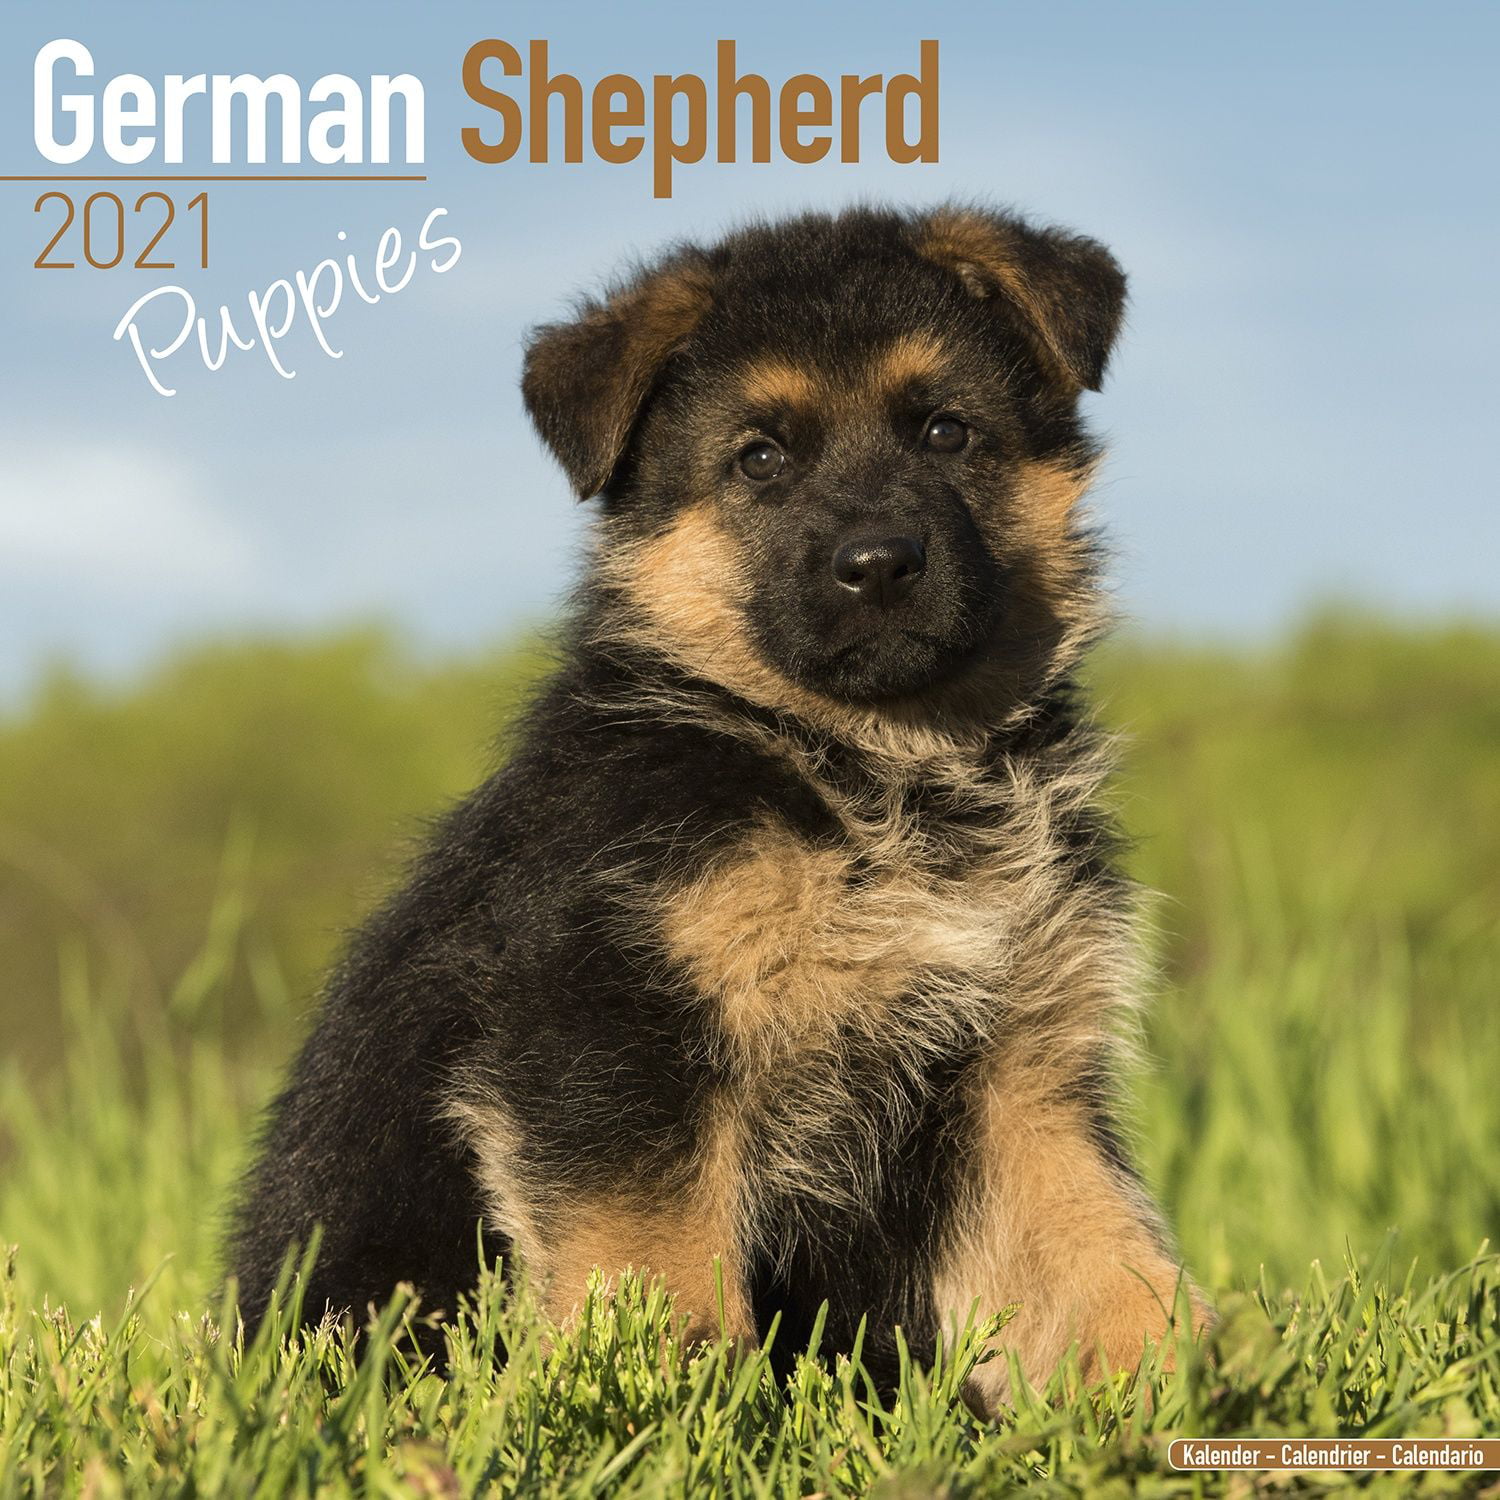 German Shepherd Puppies Calendar 2021 